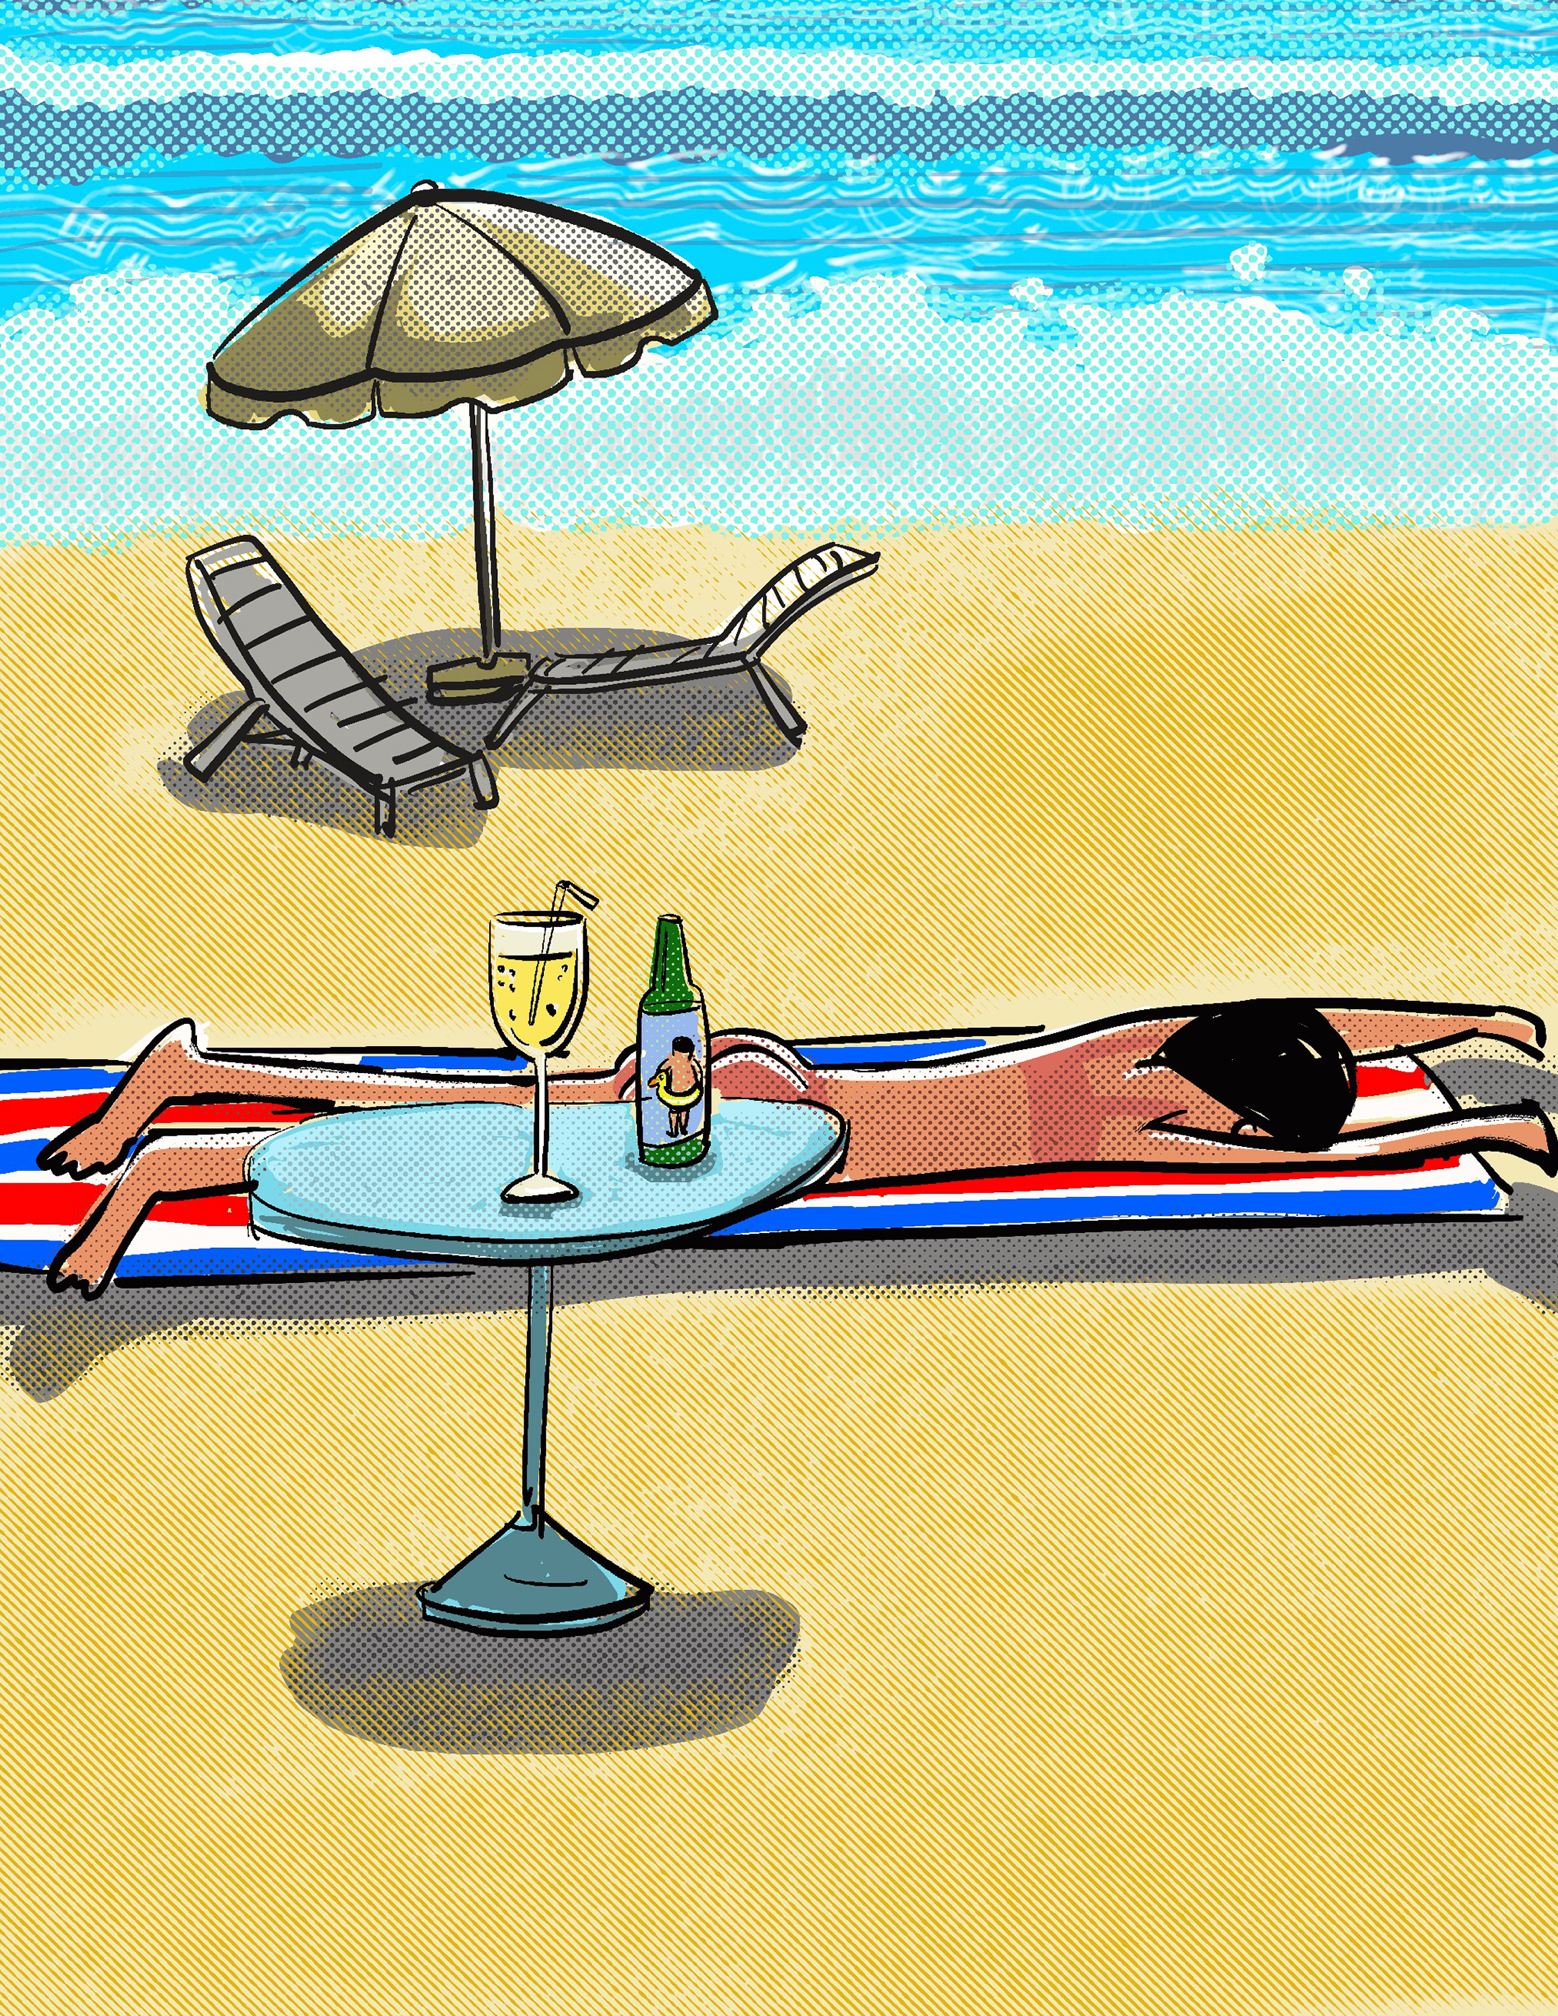 An illustration of a beach scene.